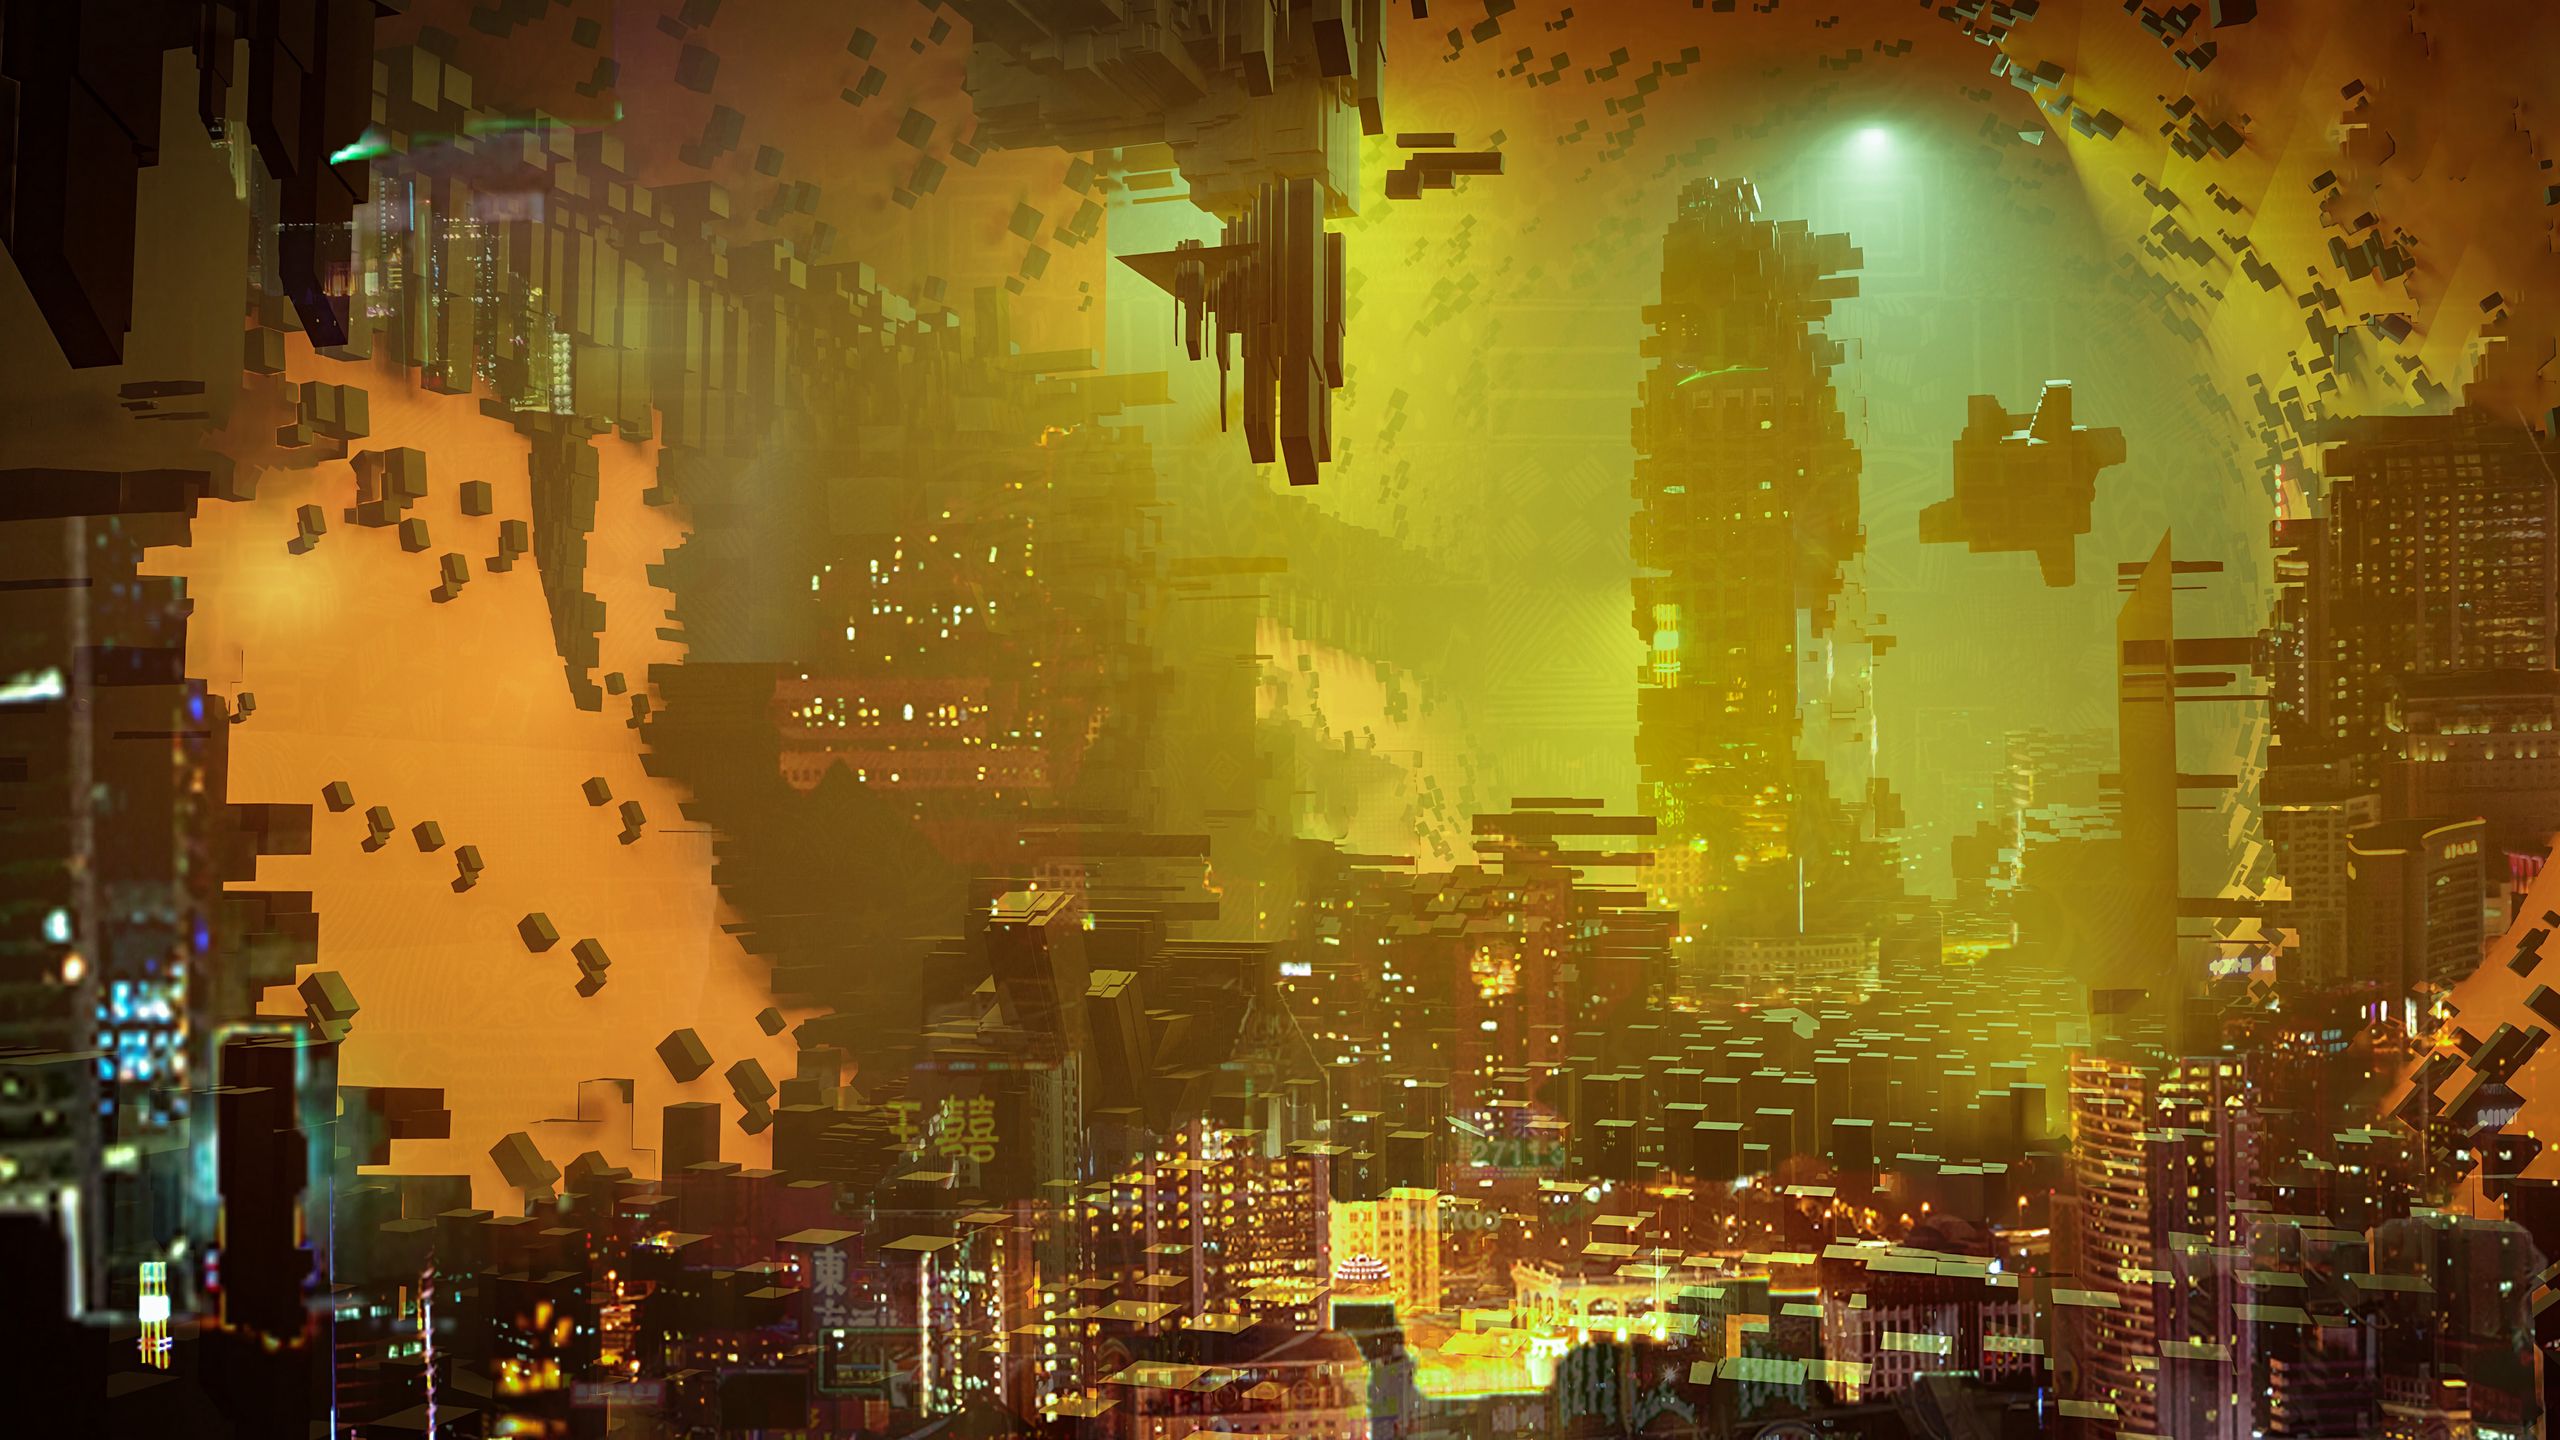 Download Explore the cyberpunk future in 2560x1440 Wallpaper